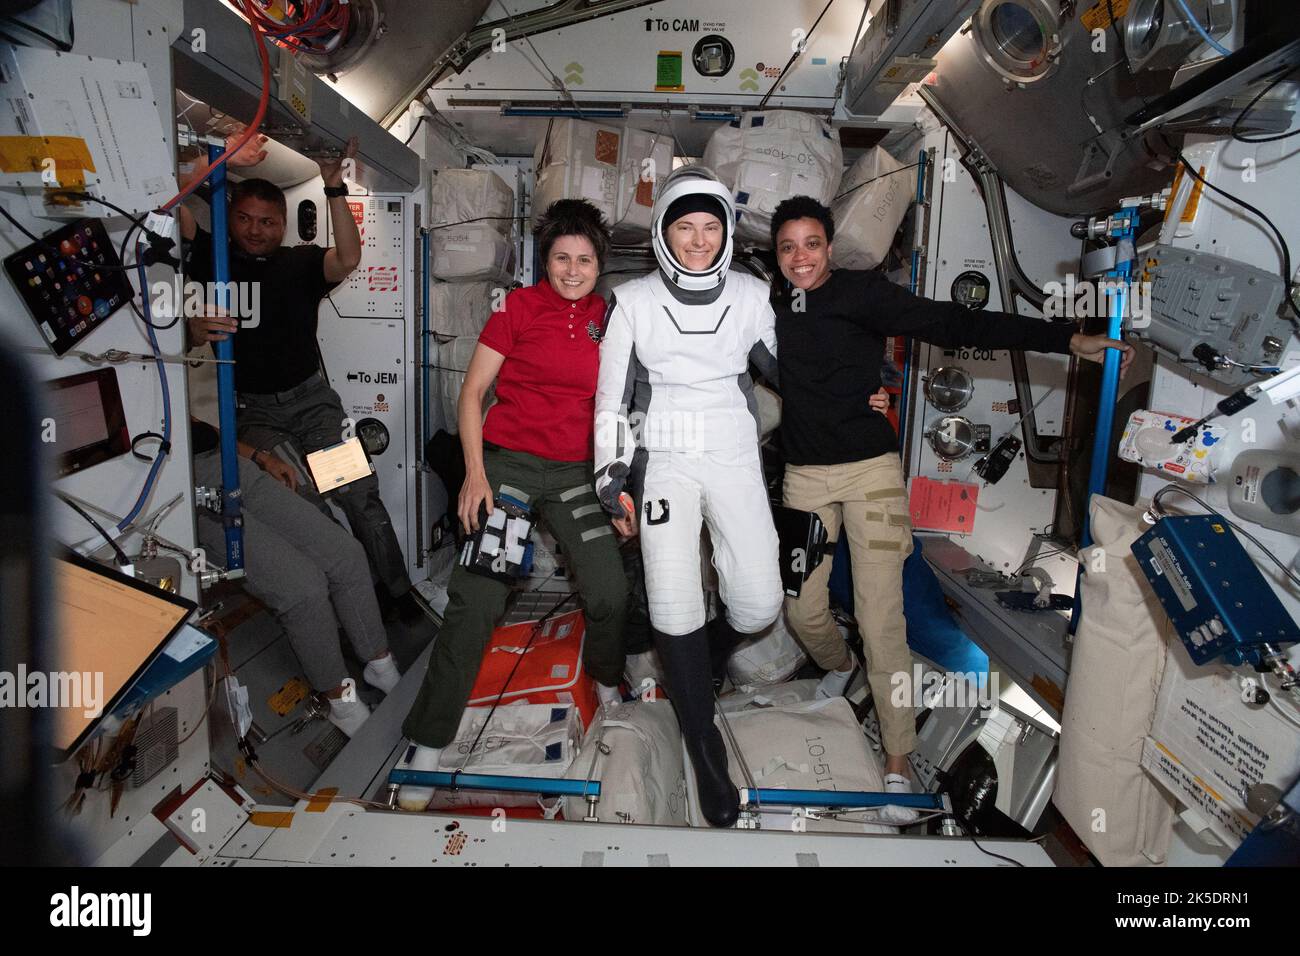 L'astronauta della NASA, Kayla Barron, è raffigurato nel suo tuta di volo SpaceX pochi istanti prima di salire a bordo della nave dell'equipaggio Dragon Endeavour e partire per la Terra. Sta posando con (da sinistra) l'astronauta della NASA Kjell Lindgren, l'astronauta dell'ESA Samantha Cristoforetti e l'astronauta della NASA Jessica Watkins. Foto Stock